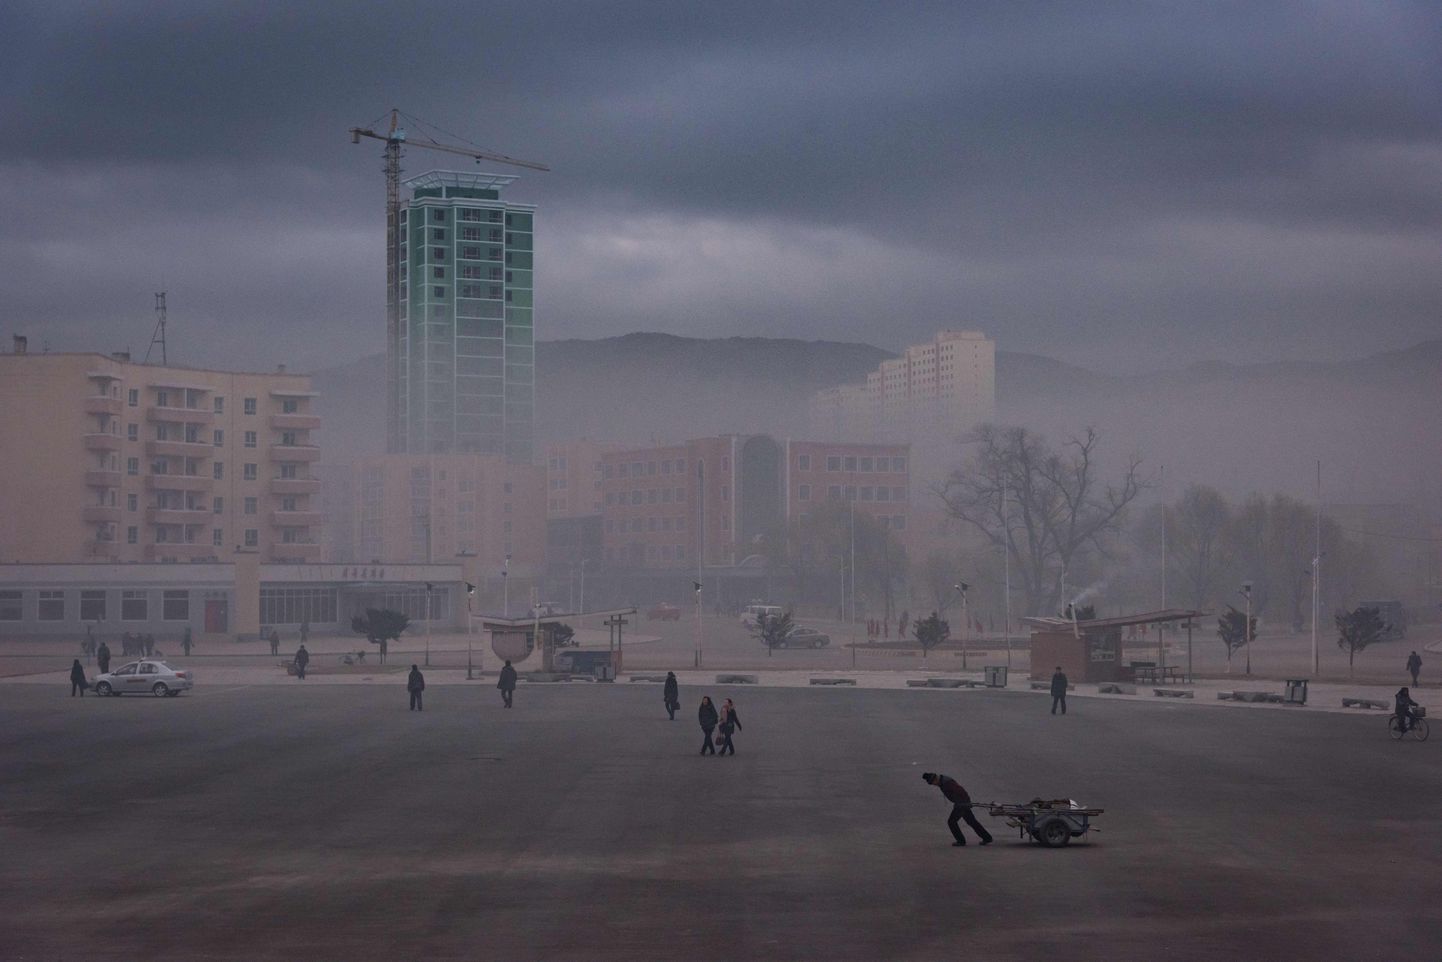 Vene piiri lähedal asuv Põhja-Korea linn Rason.